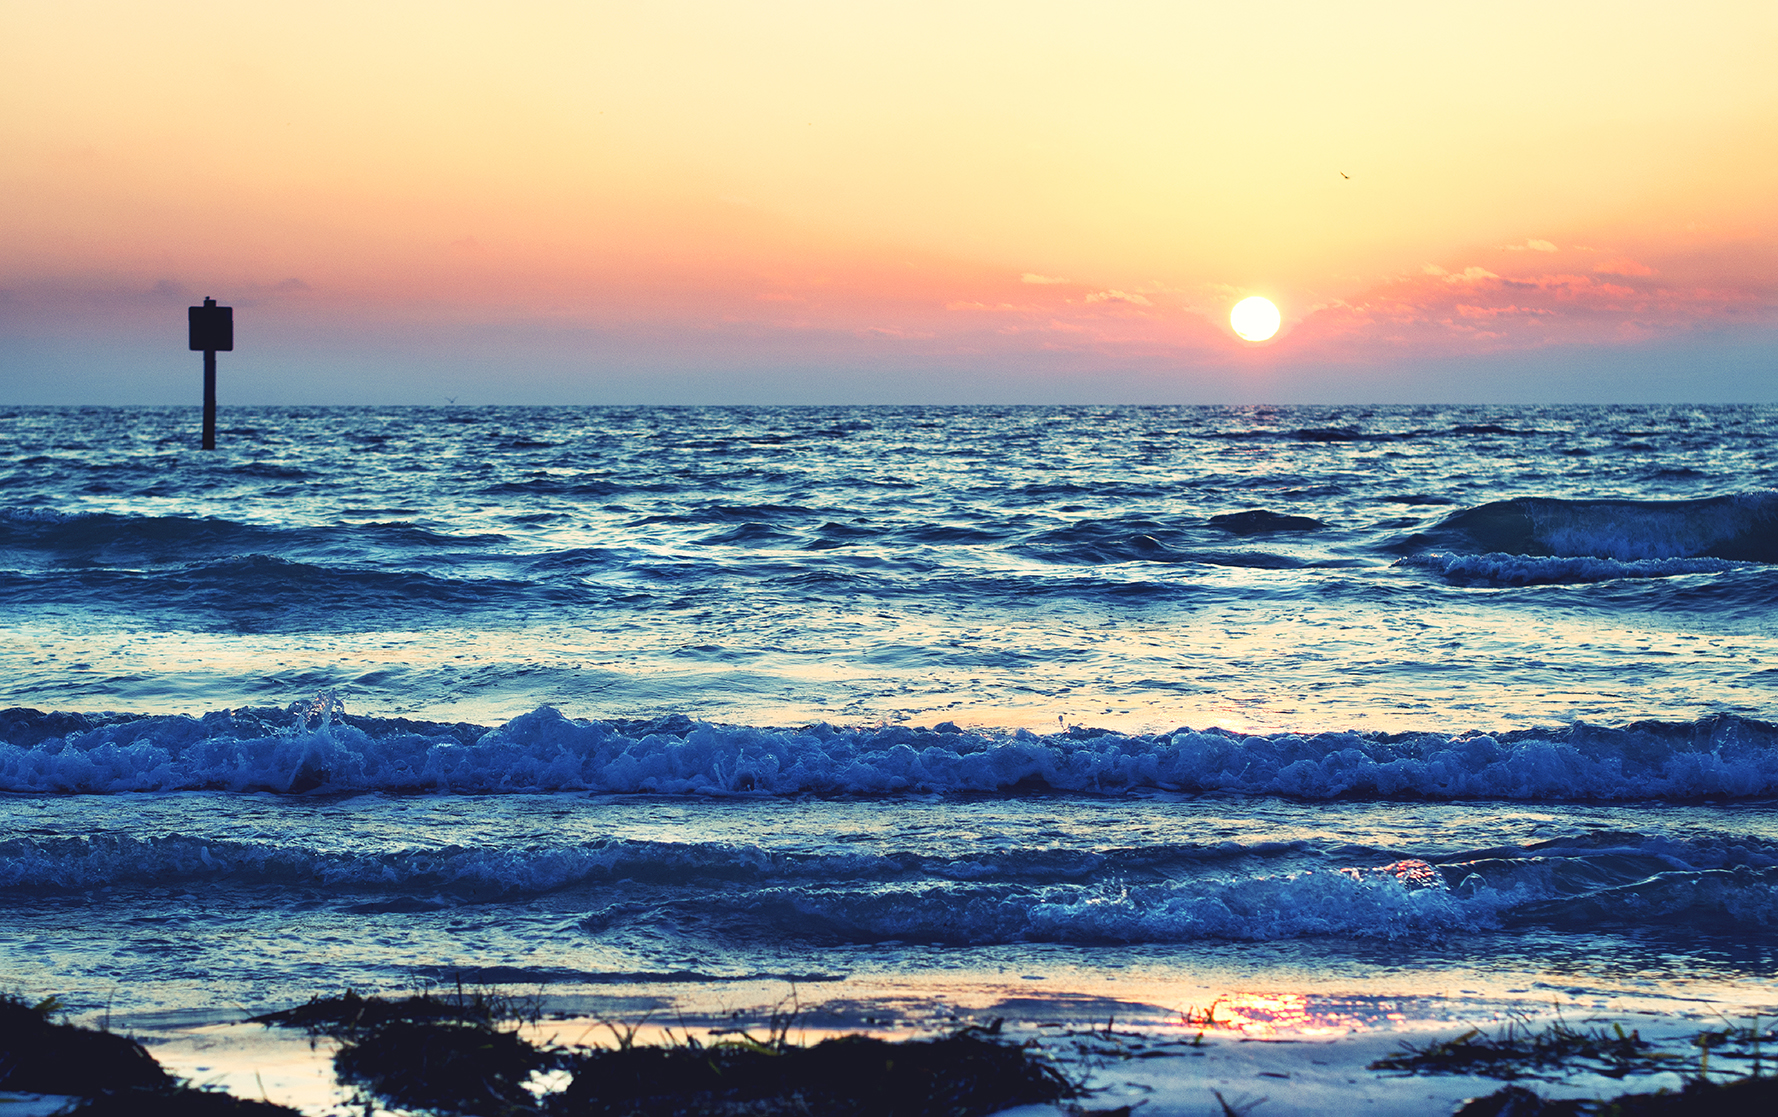 Sunset Beach. Summer Sunset Photograph.
By Stephen Geisel, Love-fi